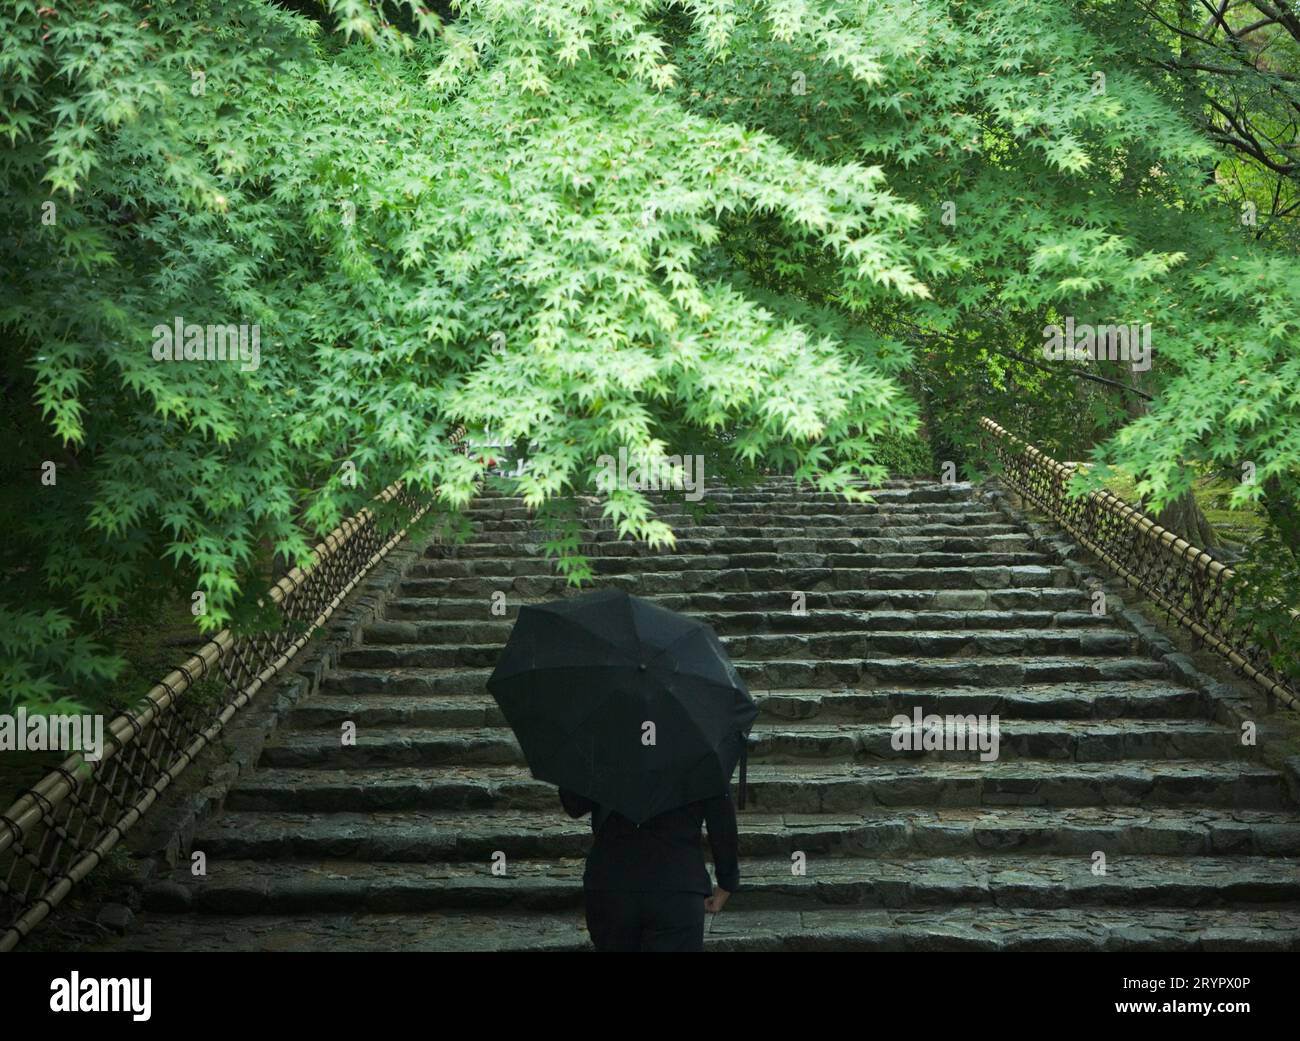 Vue arrière d'une personne avec un parapluie marchant vers le haut d'un escalier en pierre. Banque D'Images